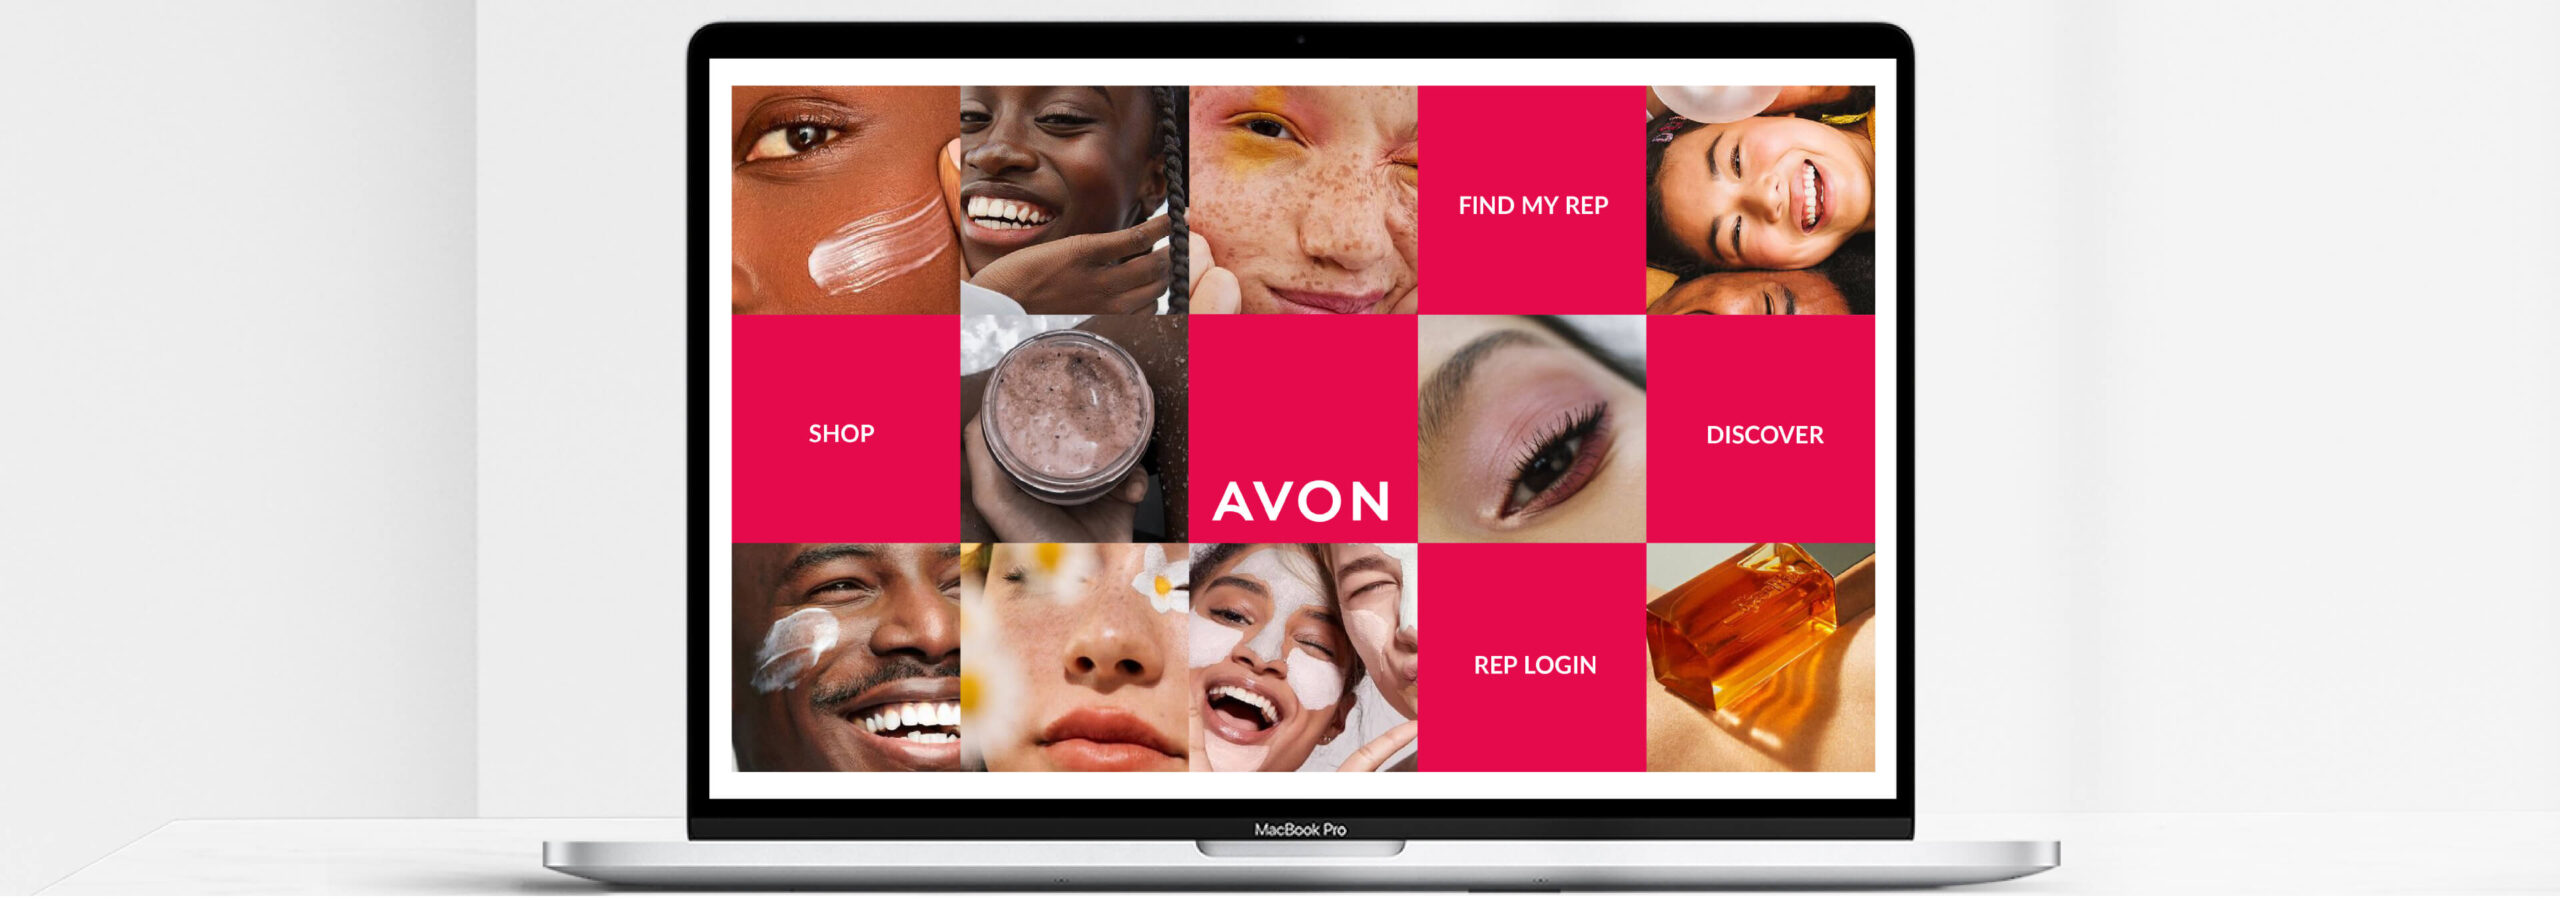 Avon website design